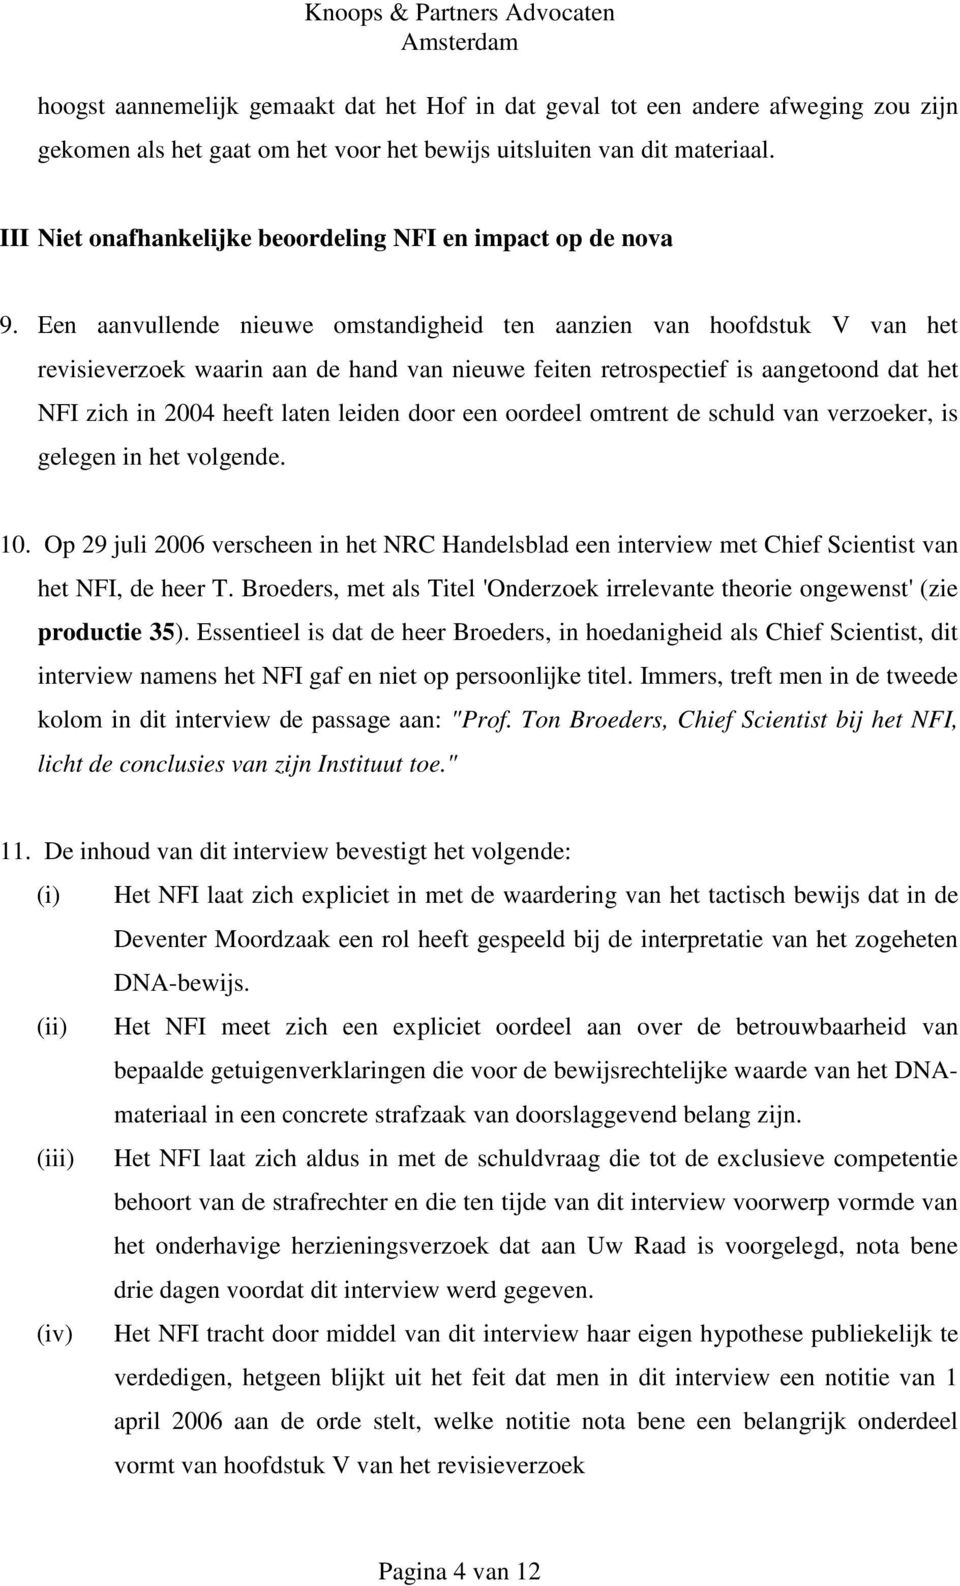 Een aanvullende nieuwe omstandigheid ten aanzien van hoofdstuk V van het revisieverzoek waarin aan de hand van nieuwe feiten retrospectief is aangetoond dat het NFI zich in 2004 heeft laten leiden